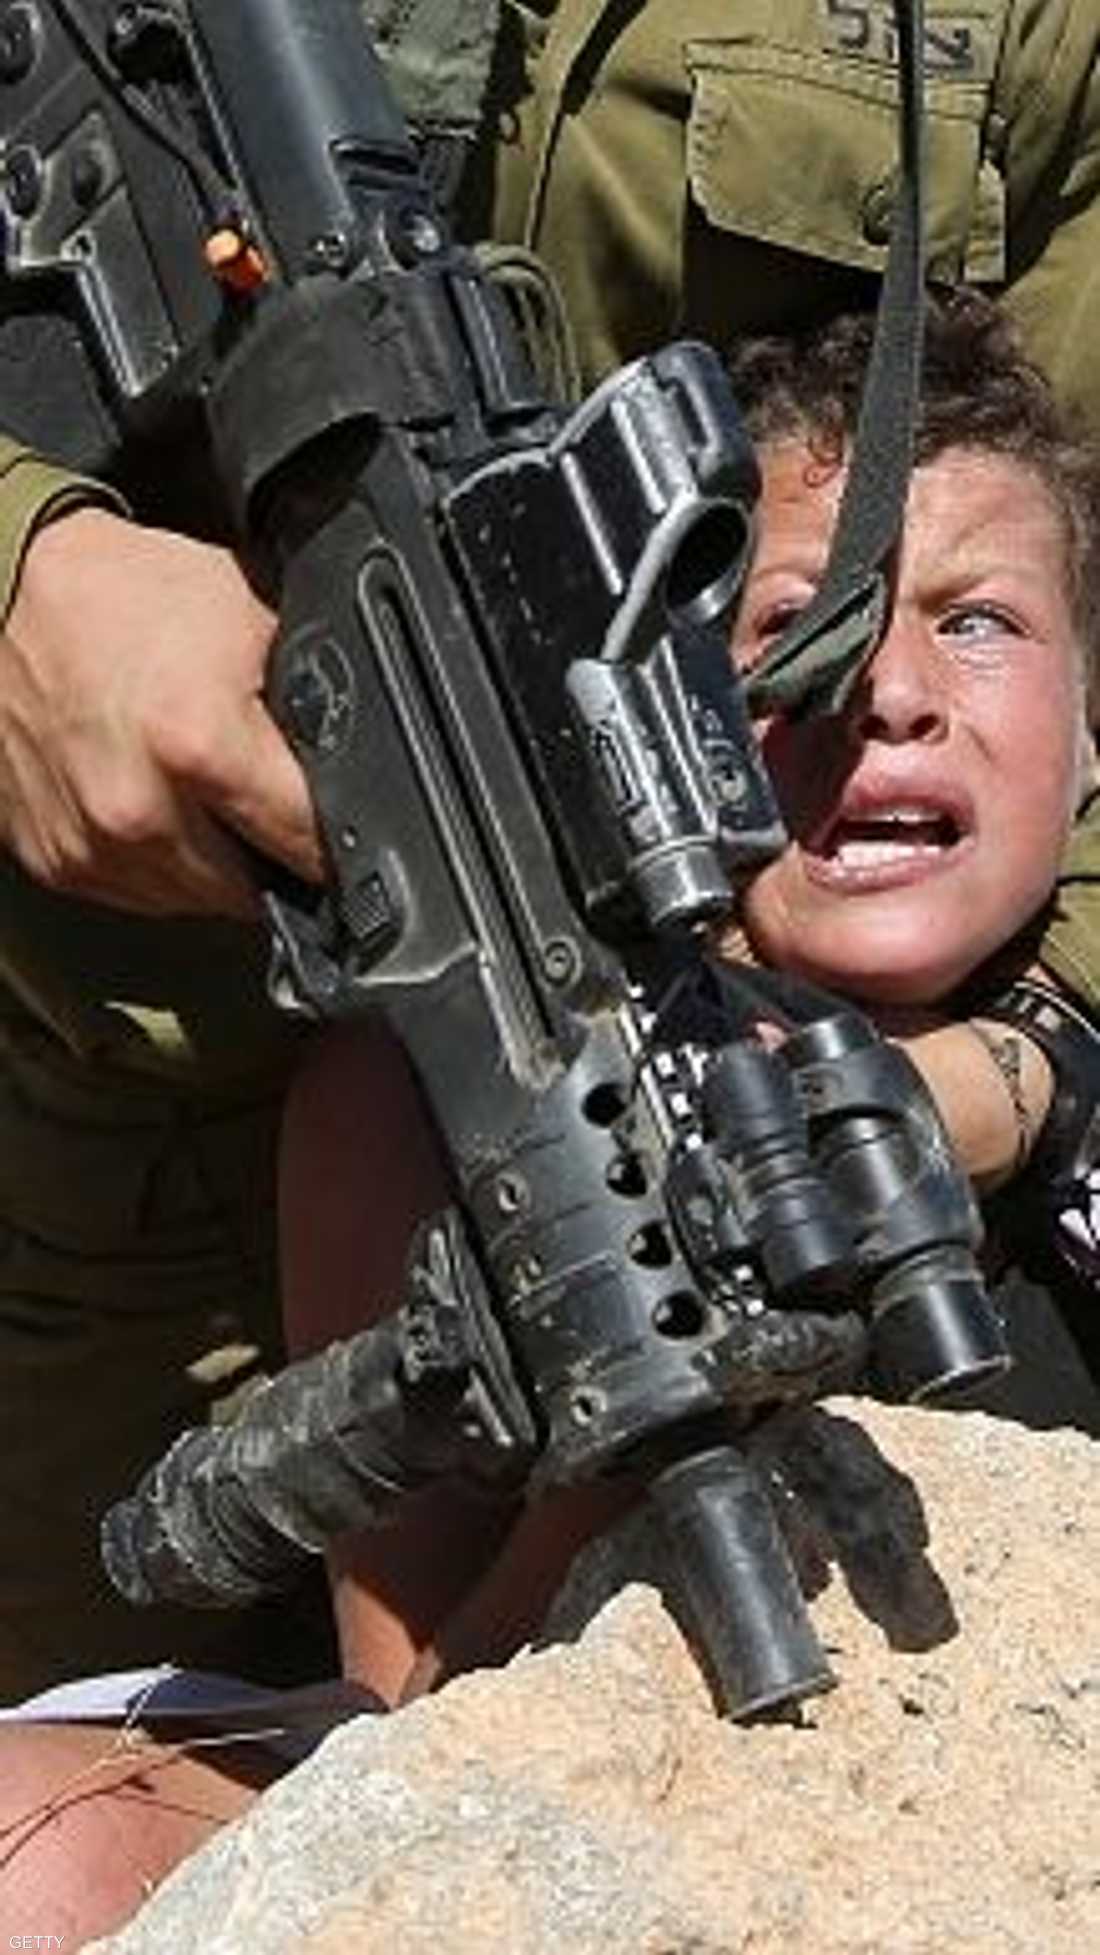 الجندي الإسرائيلي يمارس جبروته على طفل فلسطيني بيد مكسورة